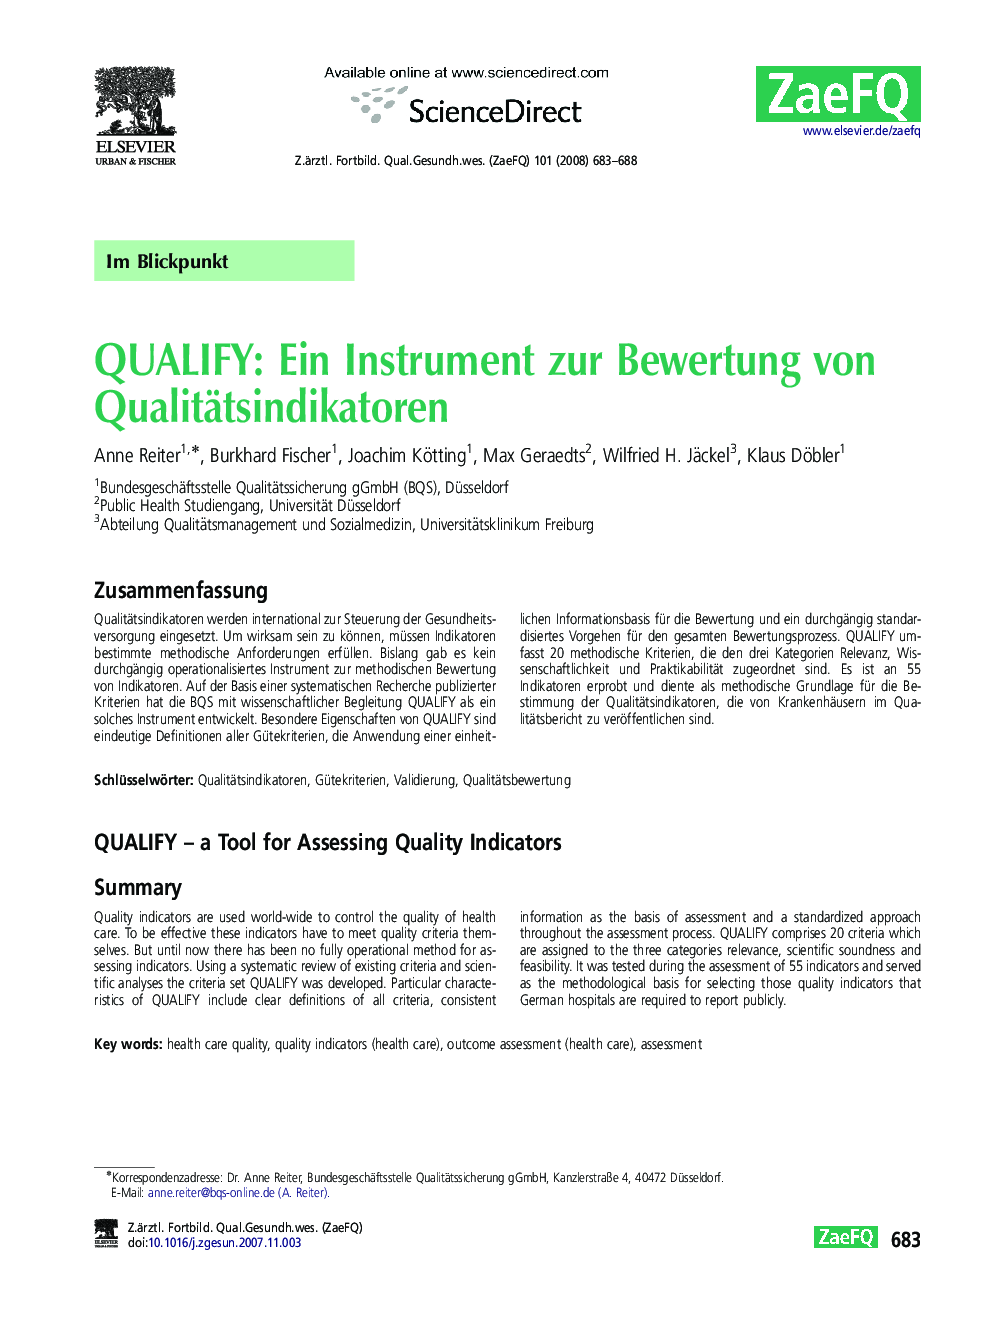 QUALIFY: Ein Instrument zur Bewertung von Qualitätsindikatoren